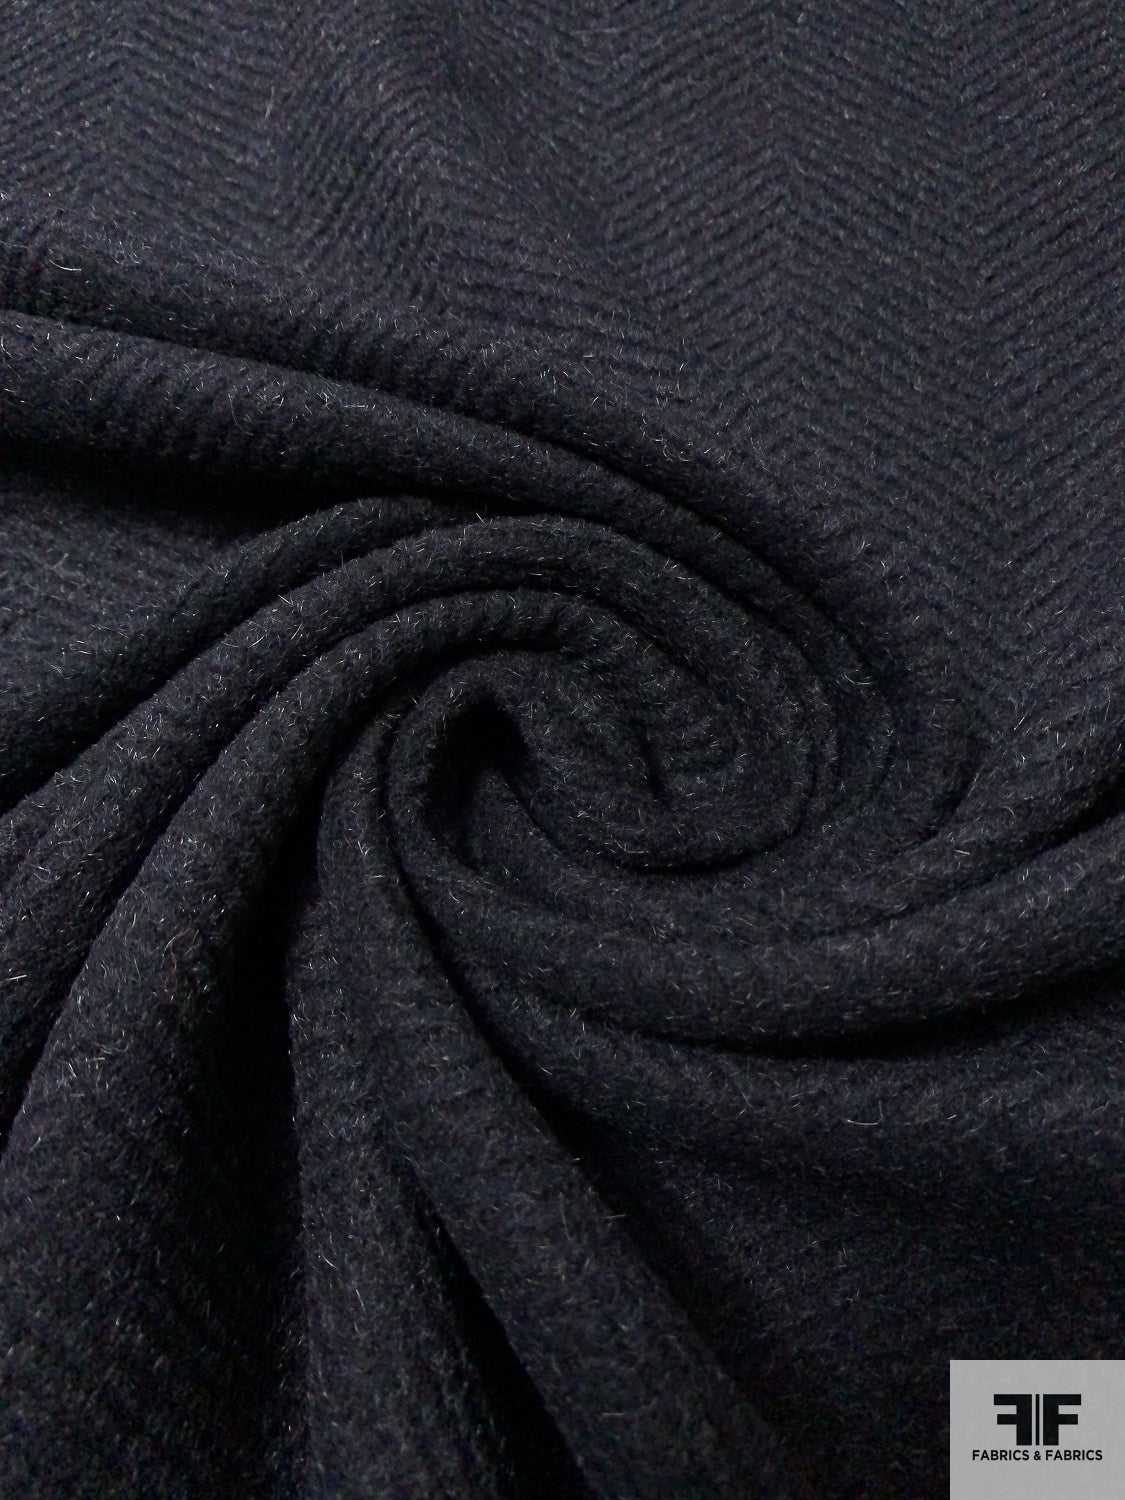 Italian Herringbone Textured and Brushed Wool Blend Coating - Black / Grey